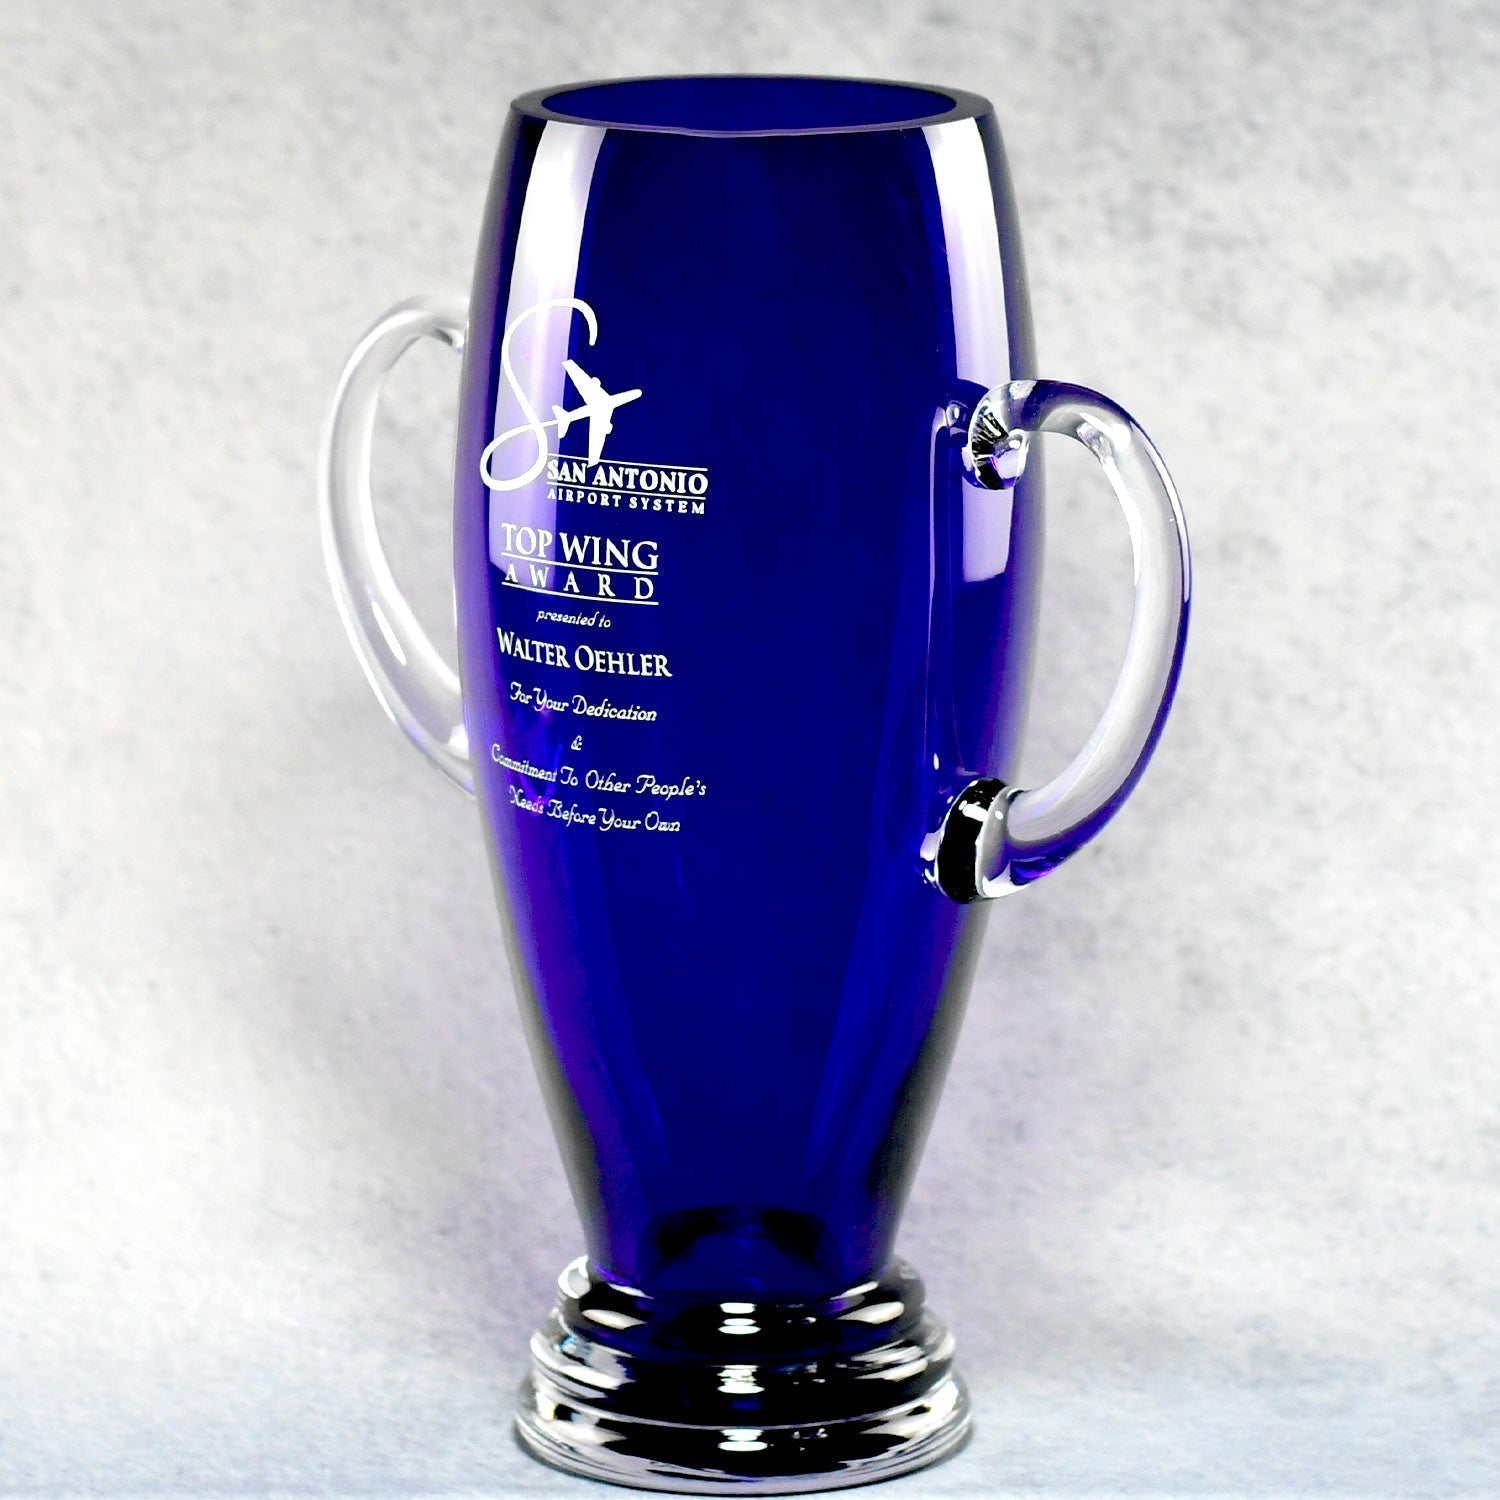 Tall Cobalt Blue Vase | Alliance Awards LLC.